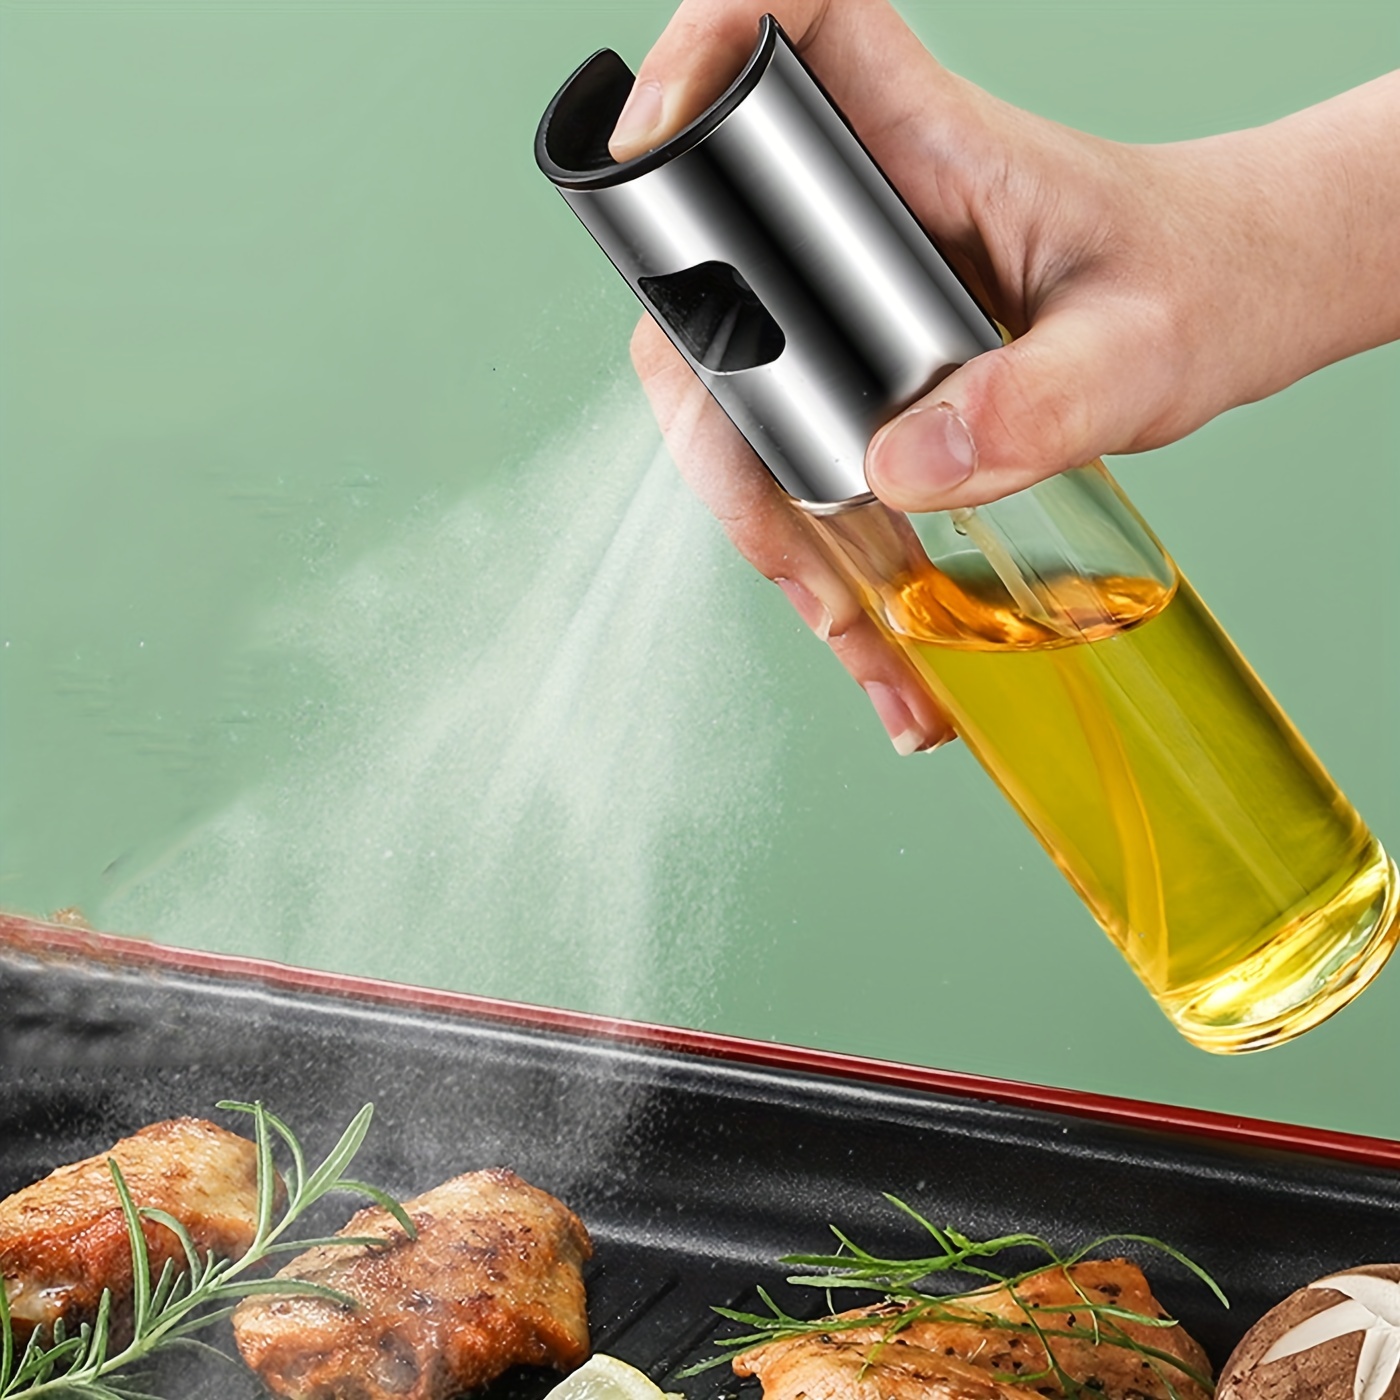 Oil Sprayer For Cooking, Olive Oil Sprayer, Oil Mister, Oil Spray